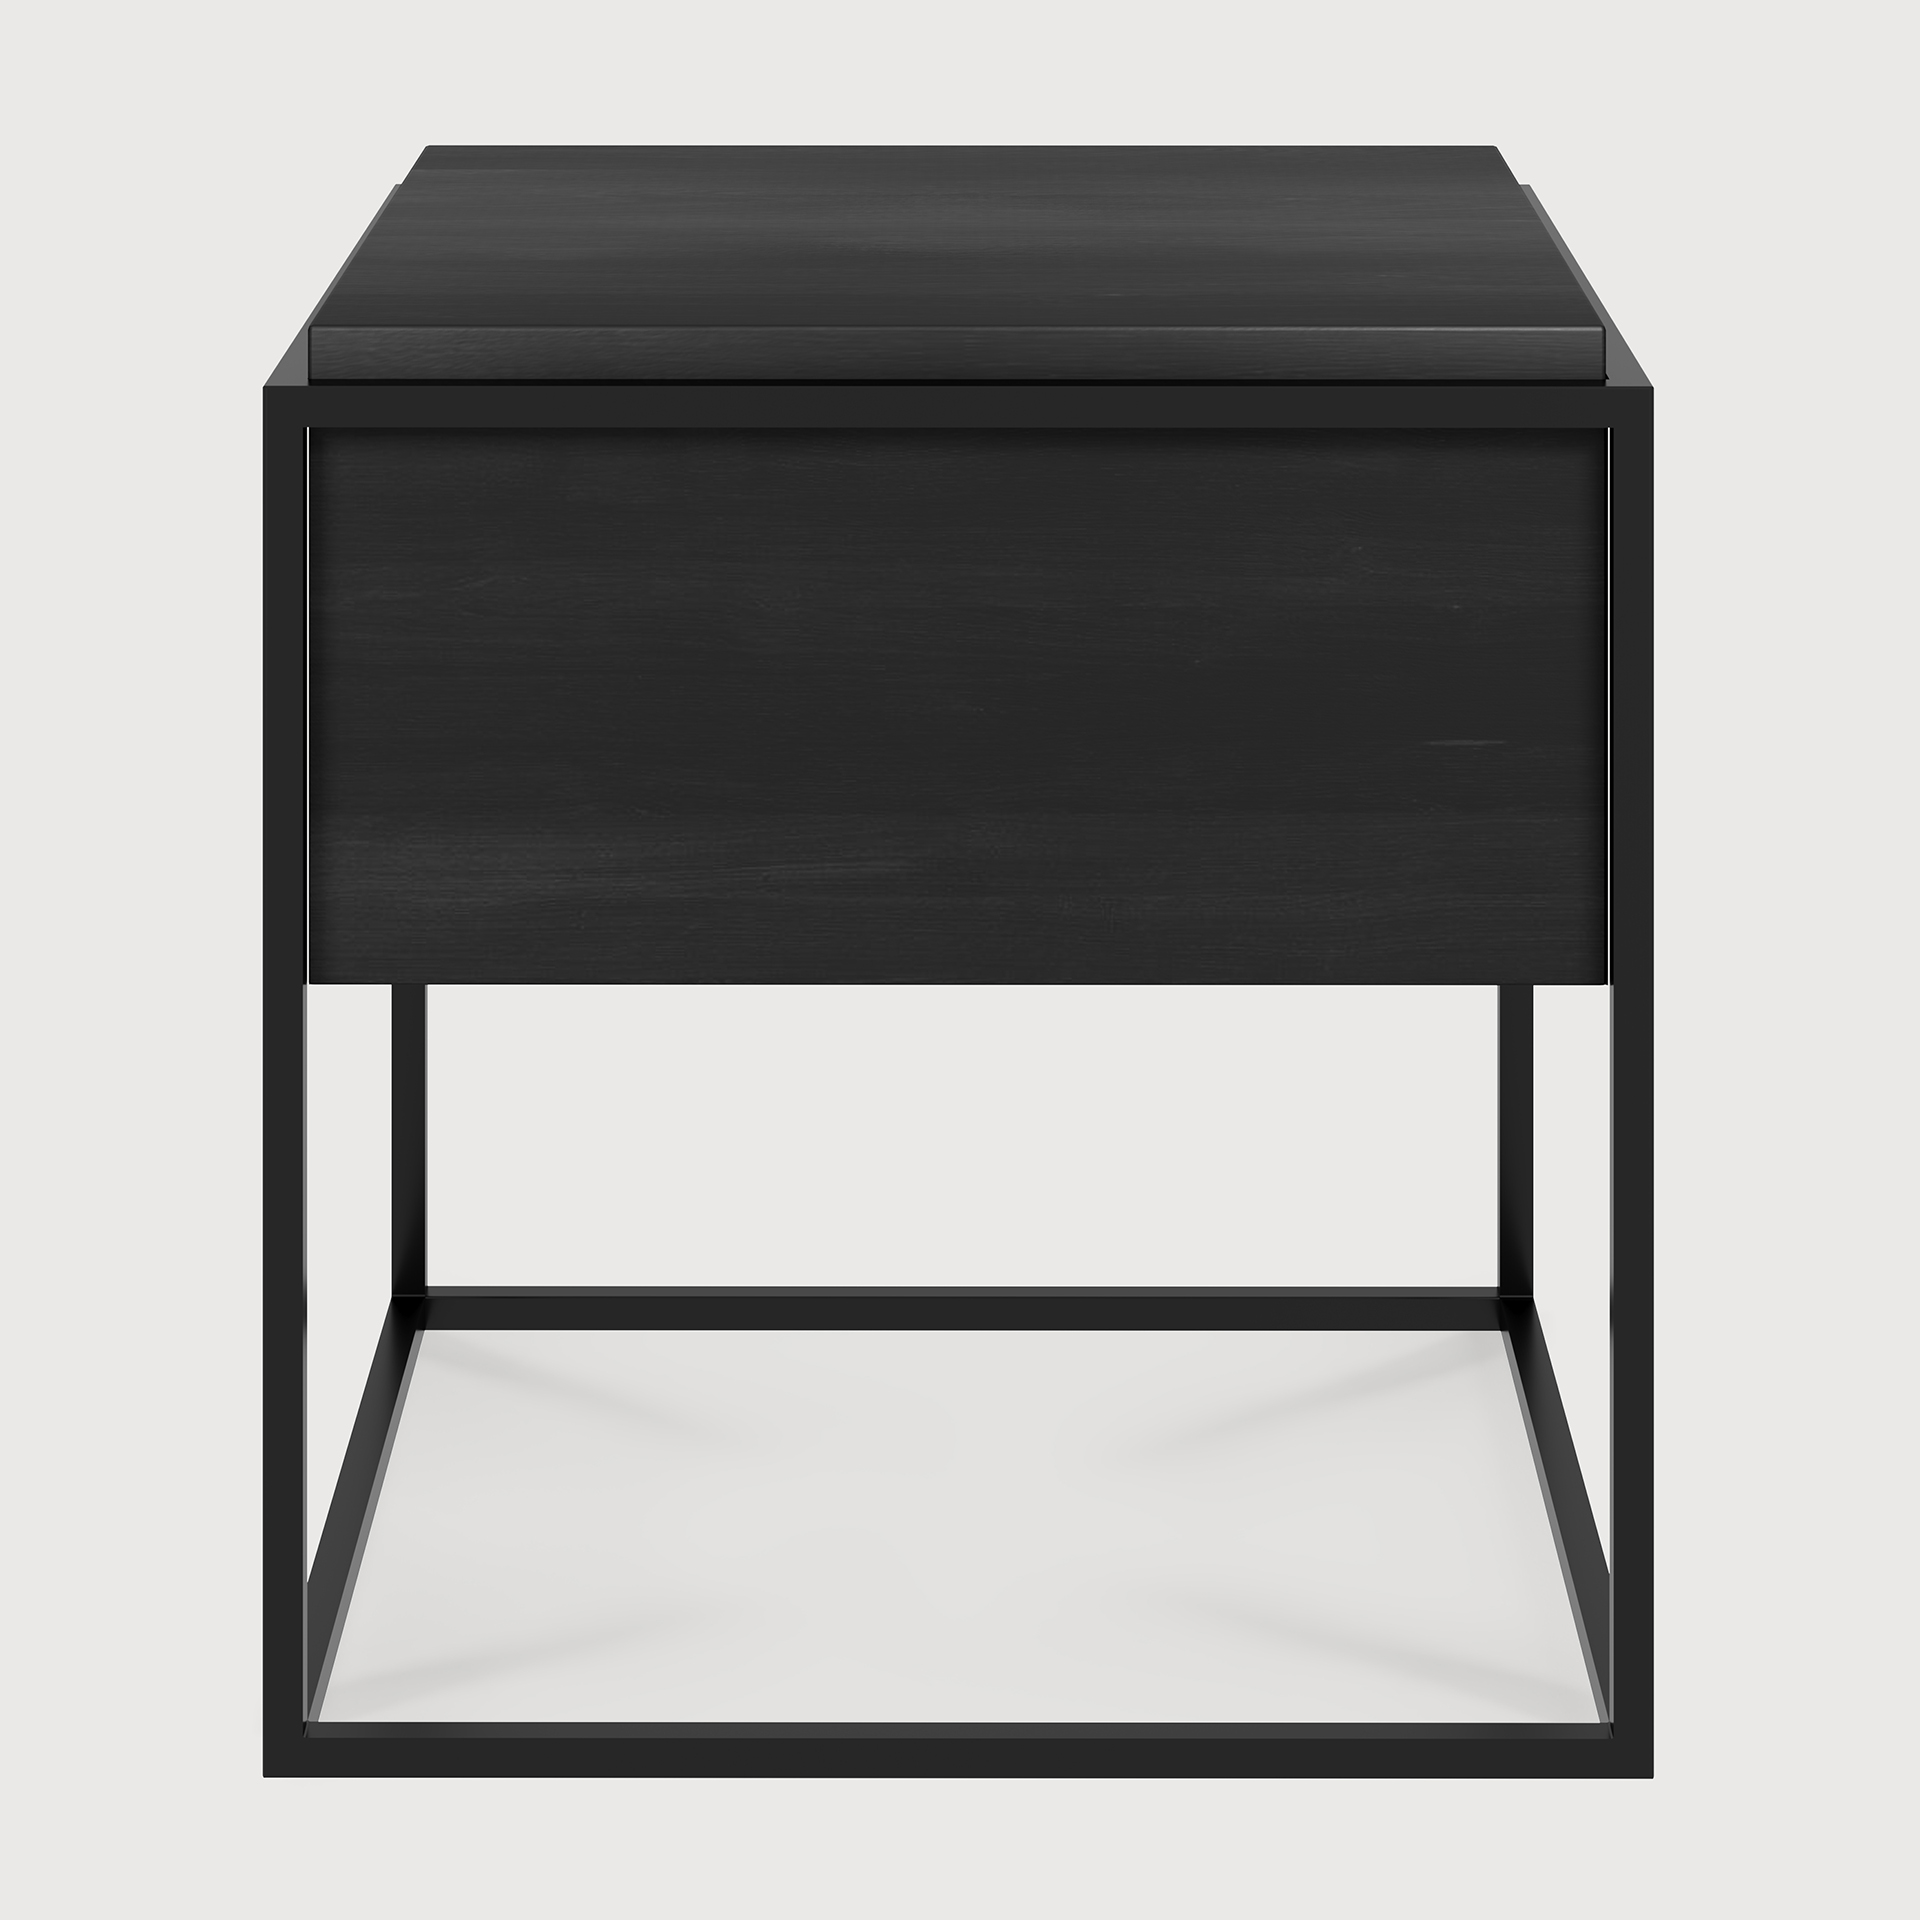 [26870] Monolit black bedside table - 1 drawer - black metal 